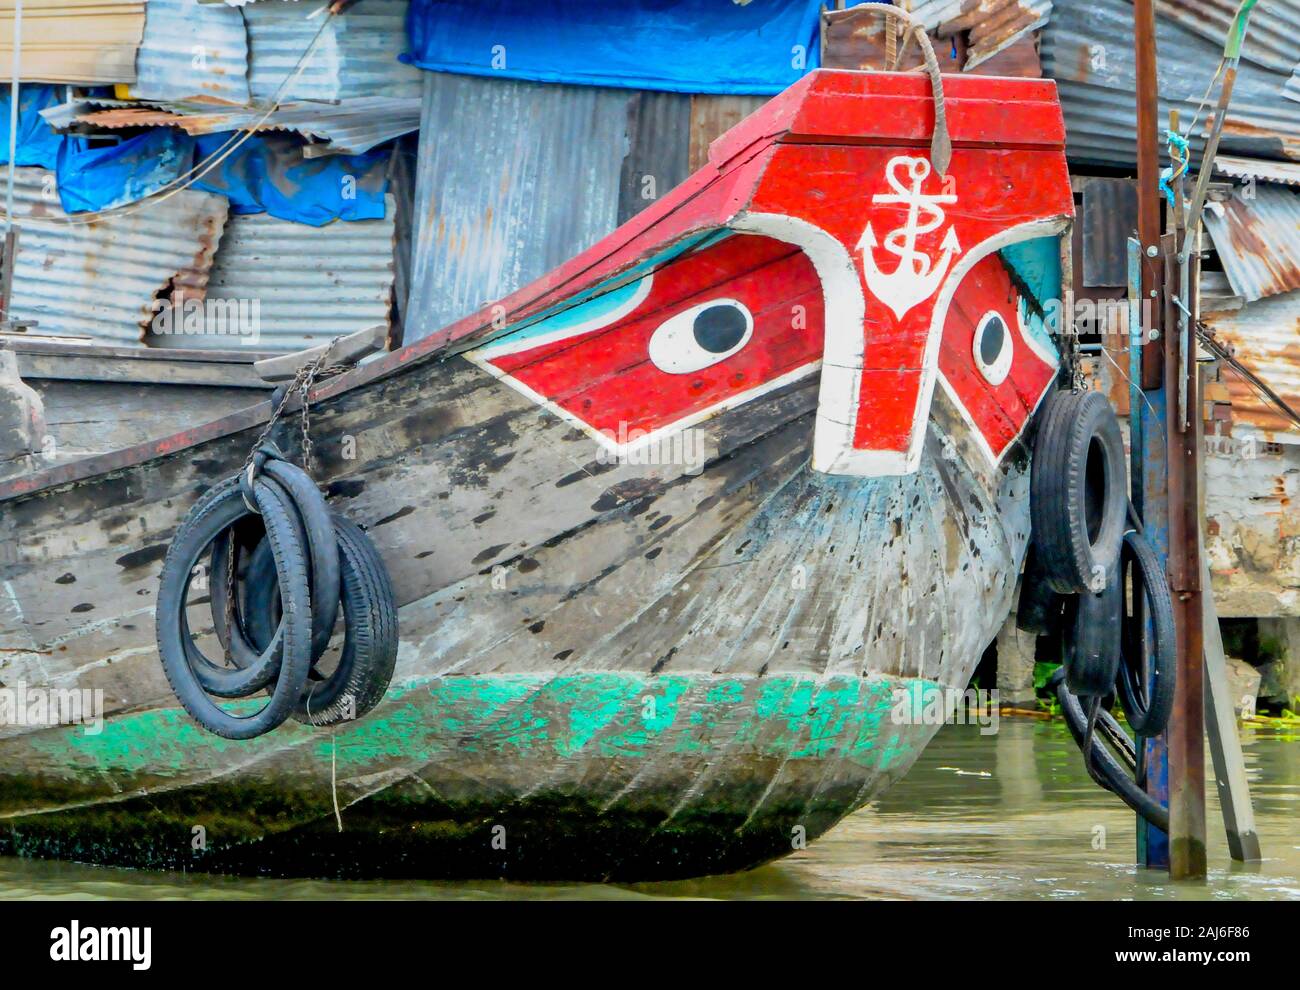 La maggior parte delle barche nel Delta del Mekong, Vietnam, sono dipinte con un paio di occhi per allontanare gli spiriti maligni Foto Stock